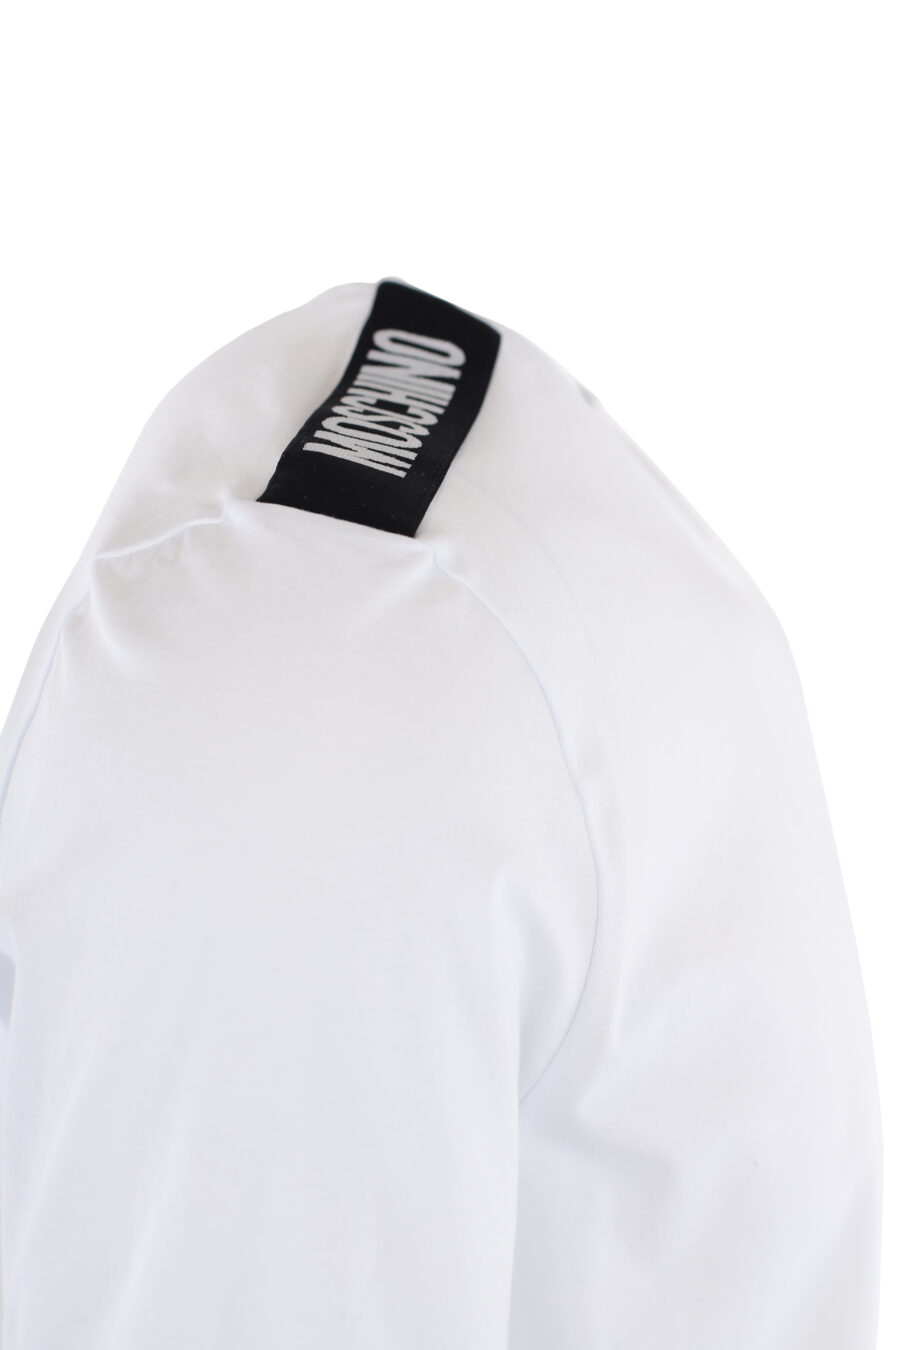 Conjunto de duas T-shirts brancas com fita com logótipo nos ombros - IMG 7317